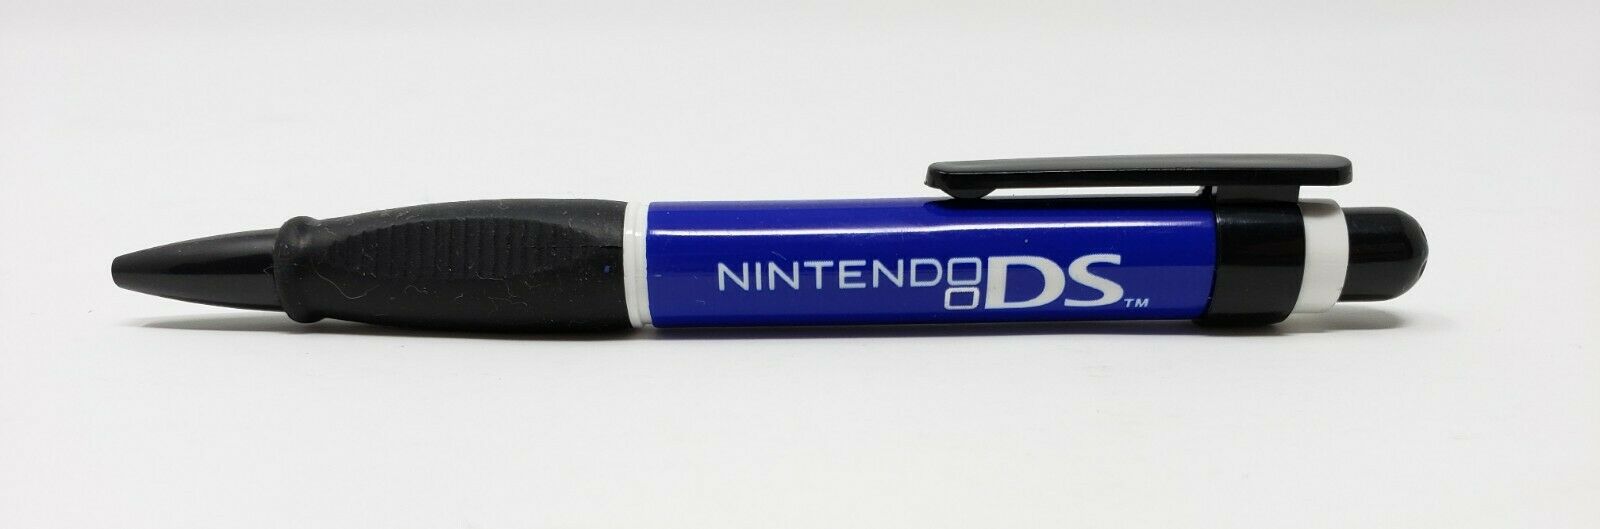 Nintendo DS Promotional Blue Stylus Pen